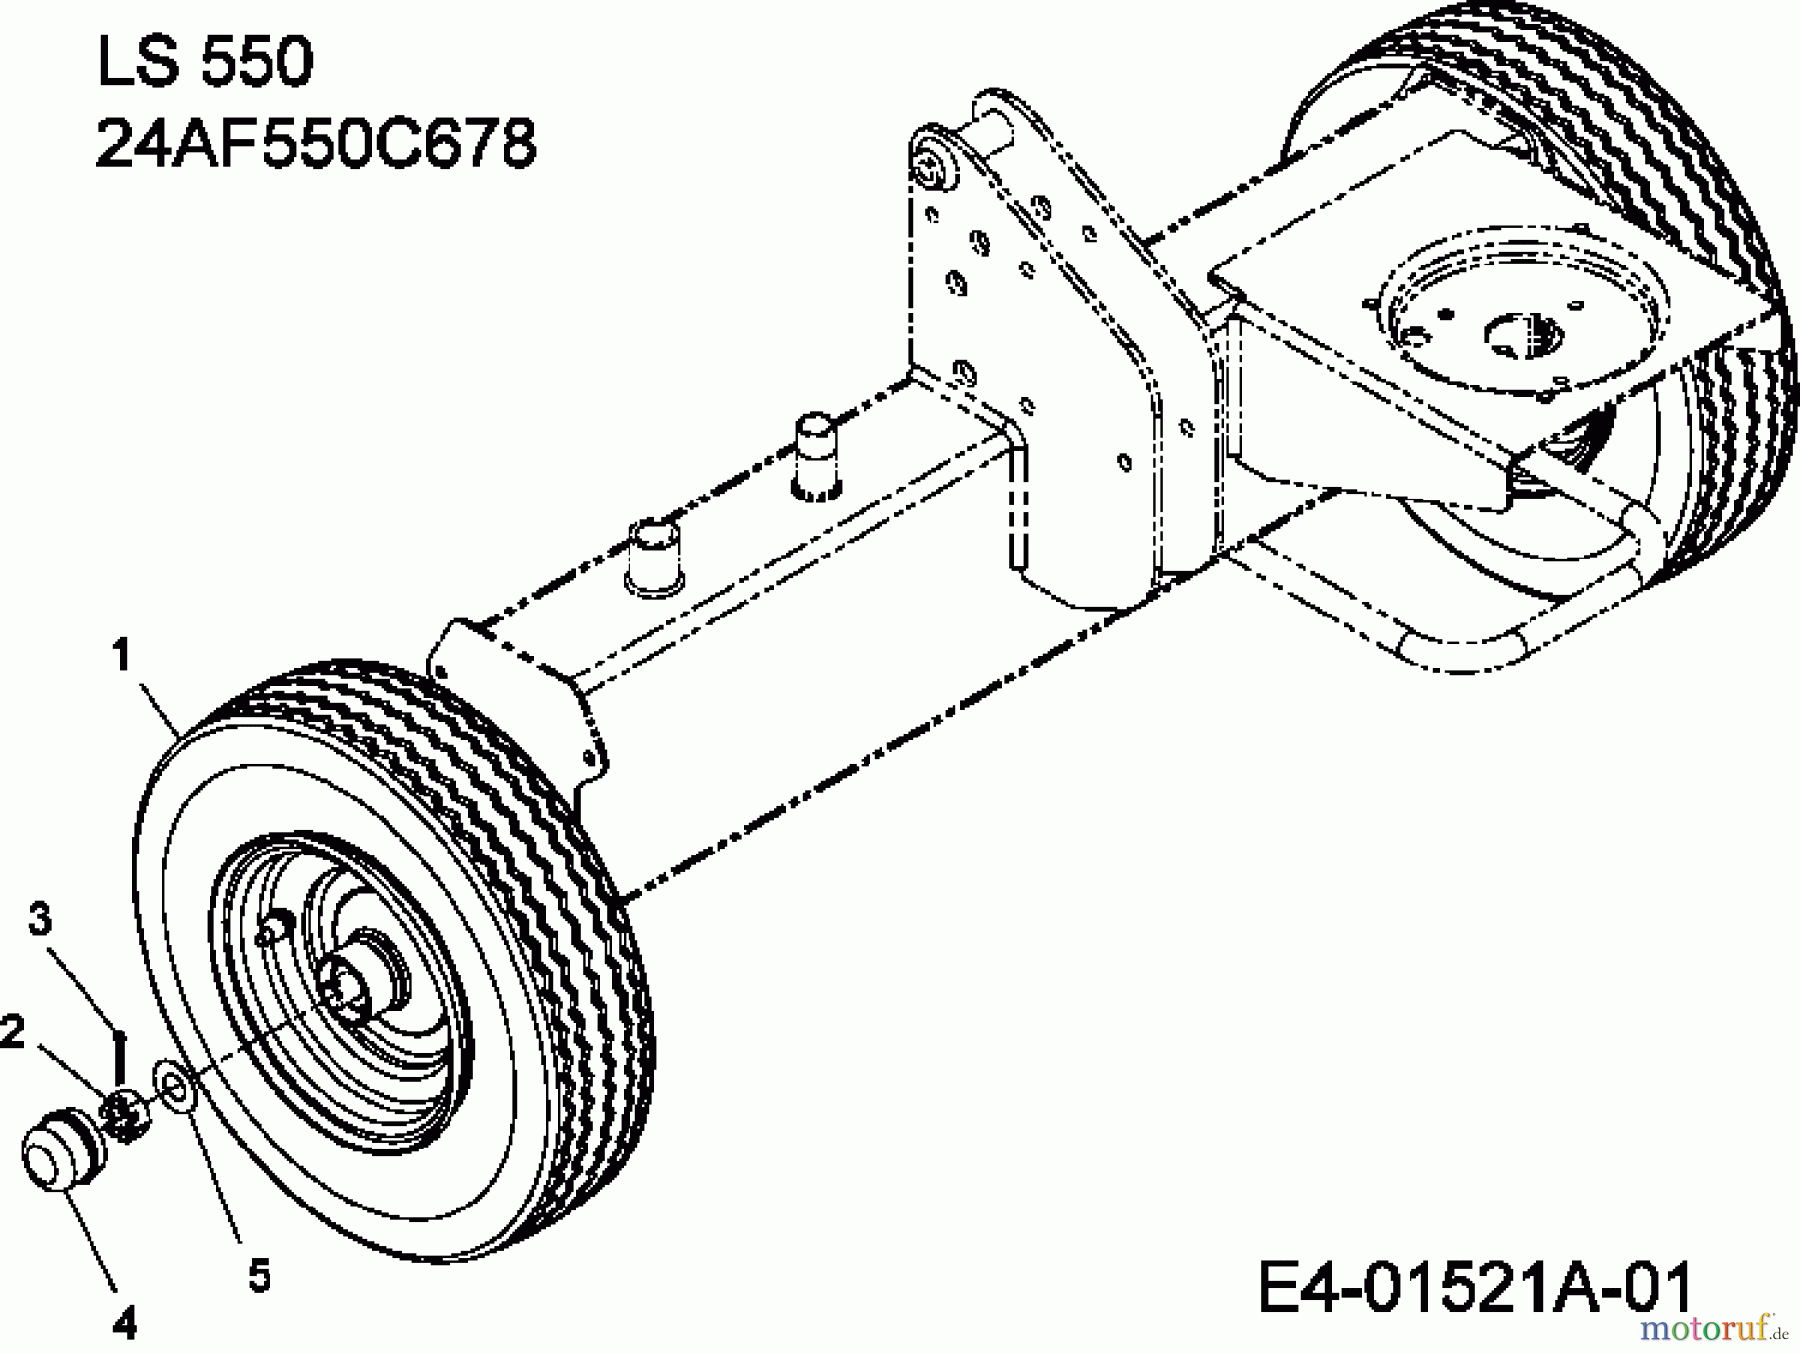  MTD Log splitter LS 550 24AF550C678  (2007) Wheels